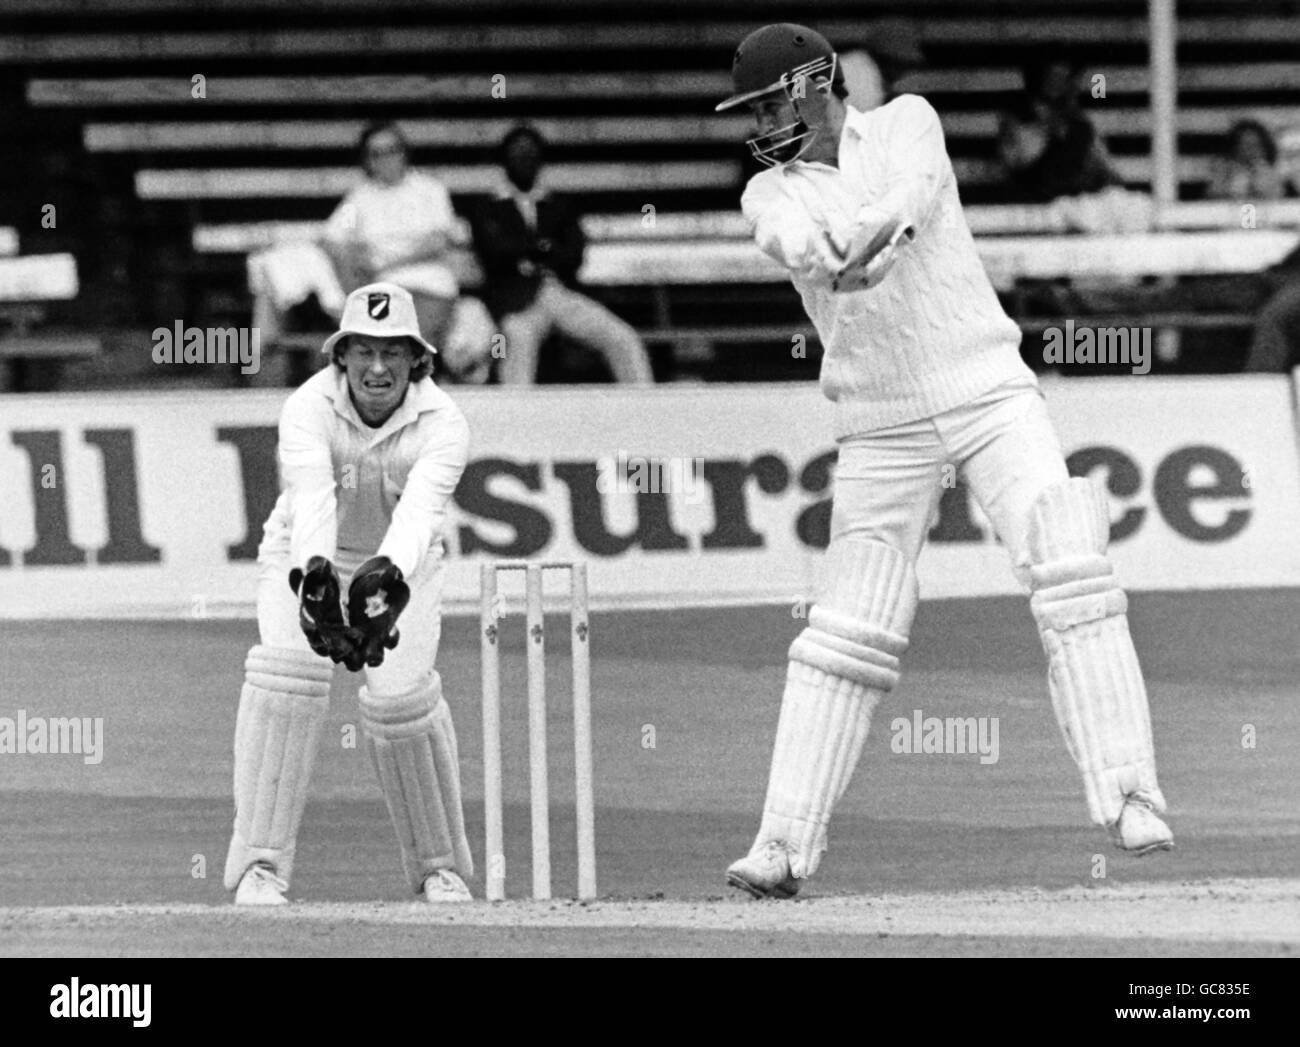 Cricket - Inghilterra / Nuova Zelanda Nuova Zelanda in Inghilterra 1986 (2nd Test) Venue Trent Bridge, Nottingham. John Emburey si è recato al suo punteggio più alto per la prova dell'Inghilterra, durante il loro secondo inning contro la Nuova Zelanda a Trent Bridge, Nottingham Foto Stock